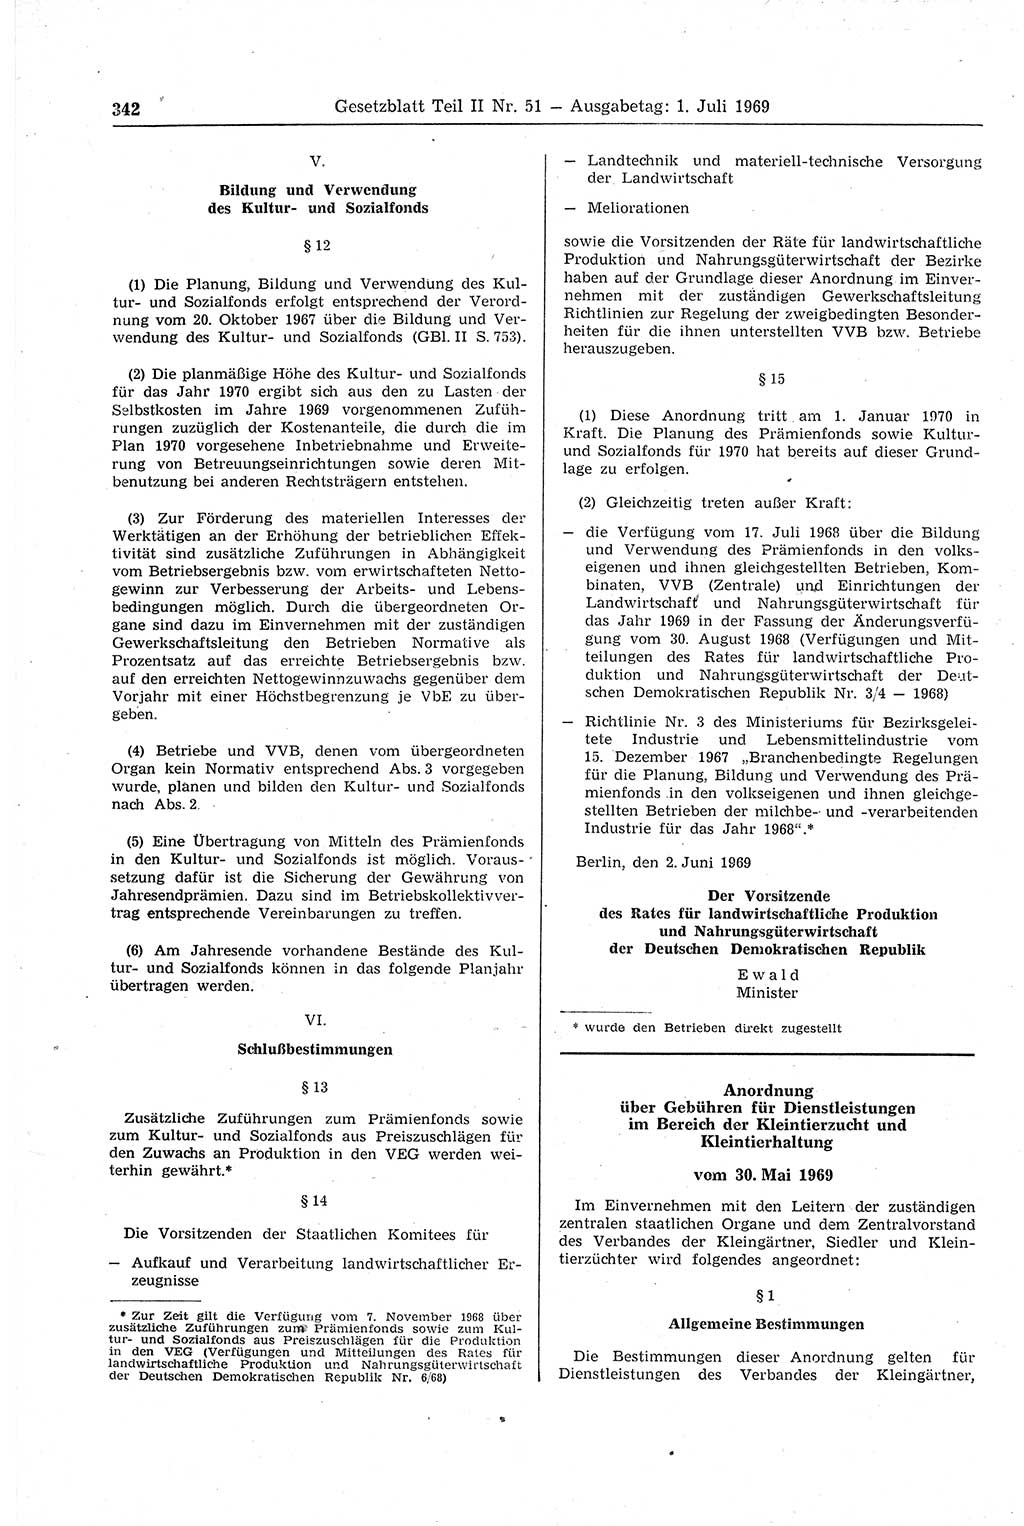 Gesetzblatt (GBl.) der Deutschen Demokratischen Republik (DDR) Teil ⅠⅠ 1969, Seite 342 (GBl. DDR ⅠⅠ 1969, S. 342)